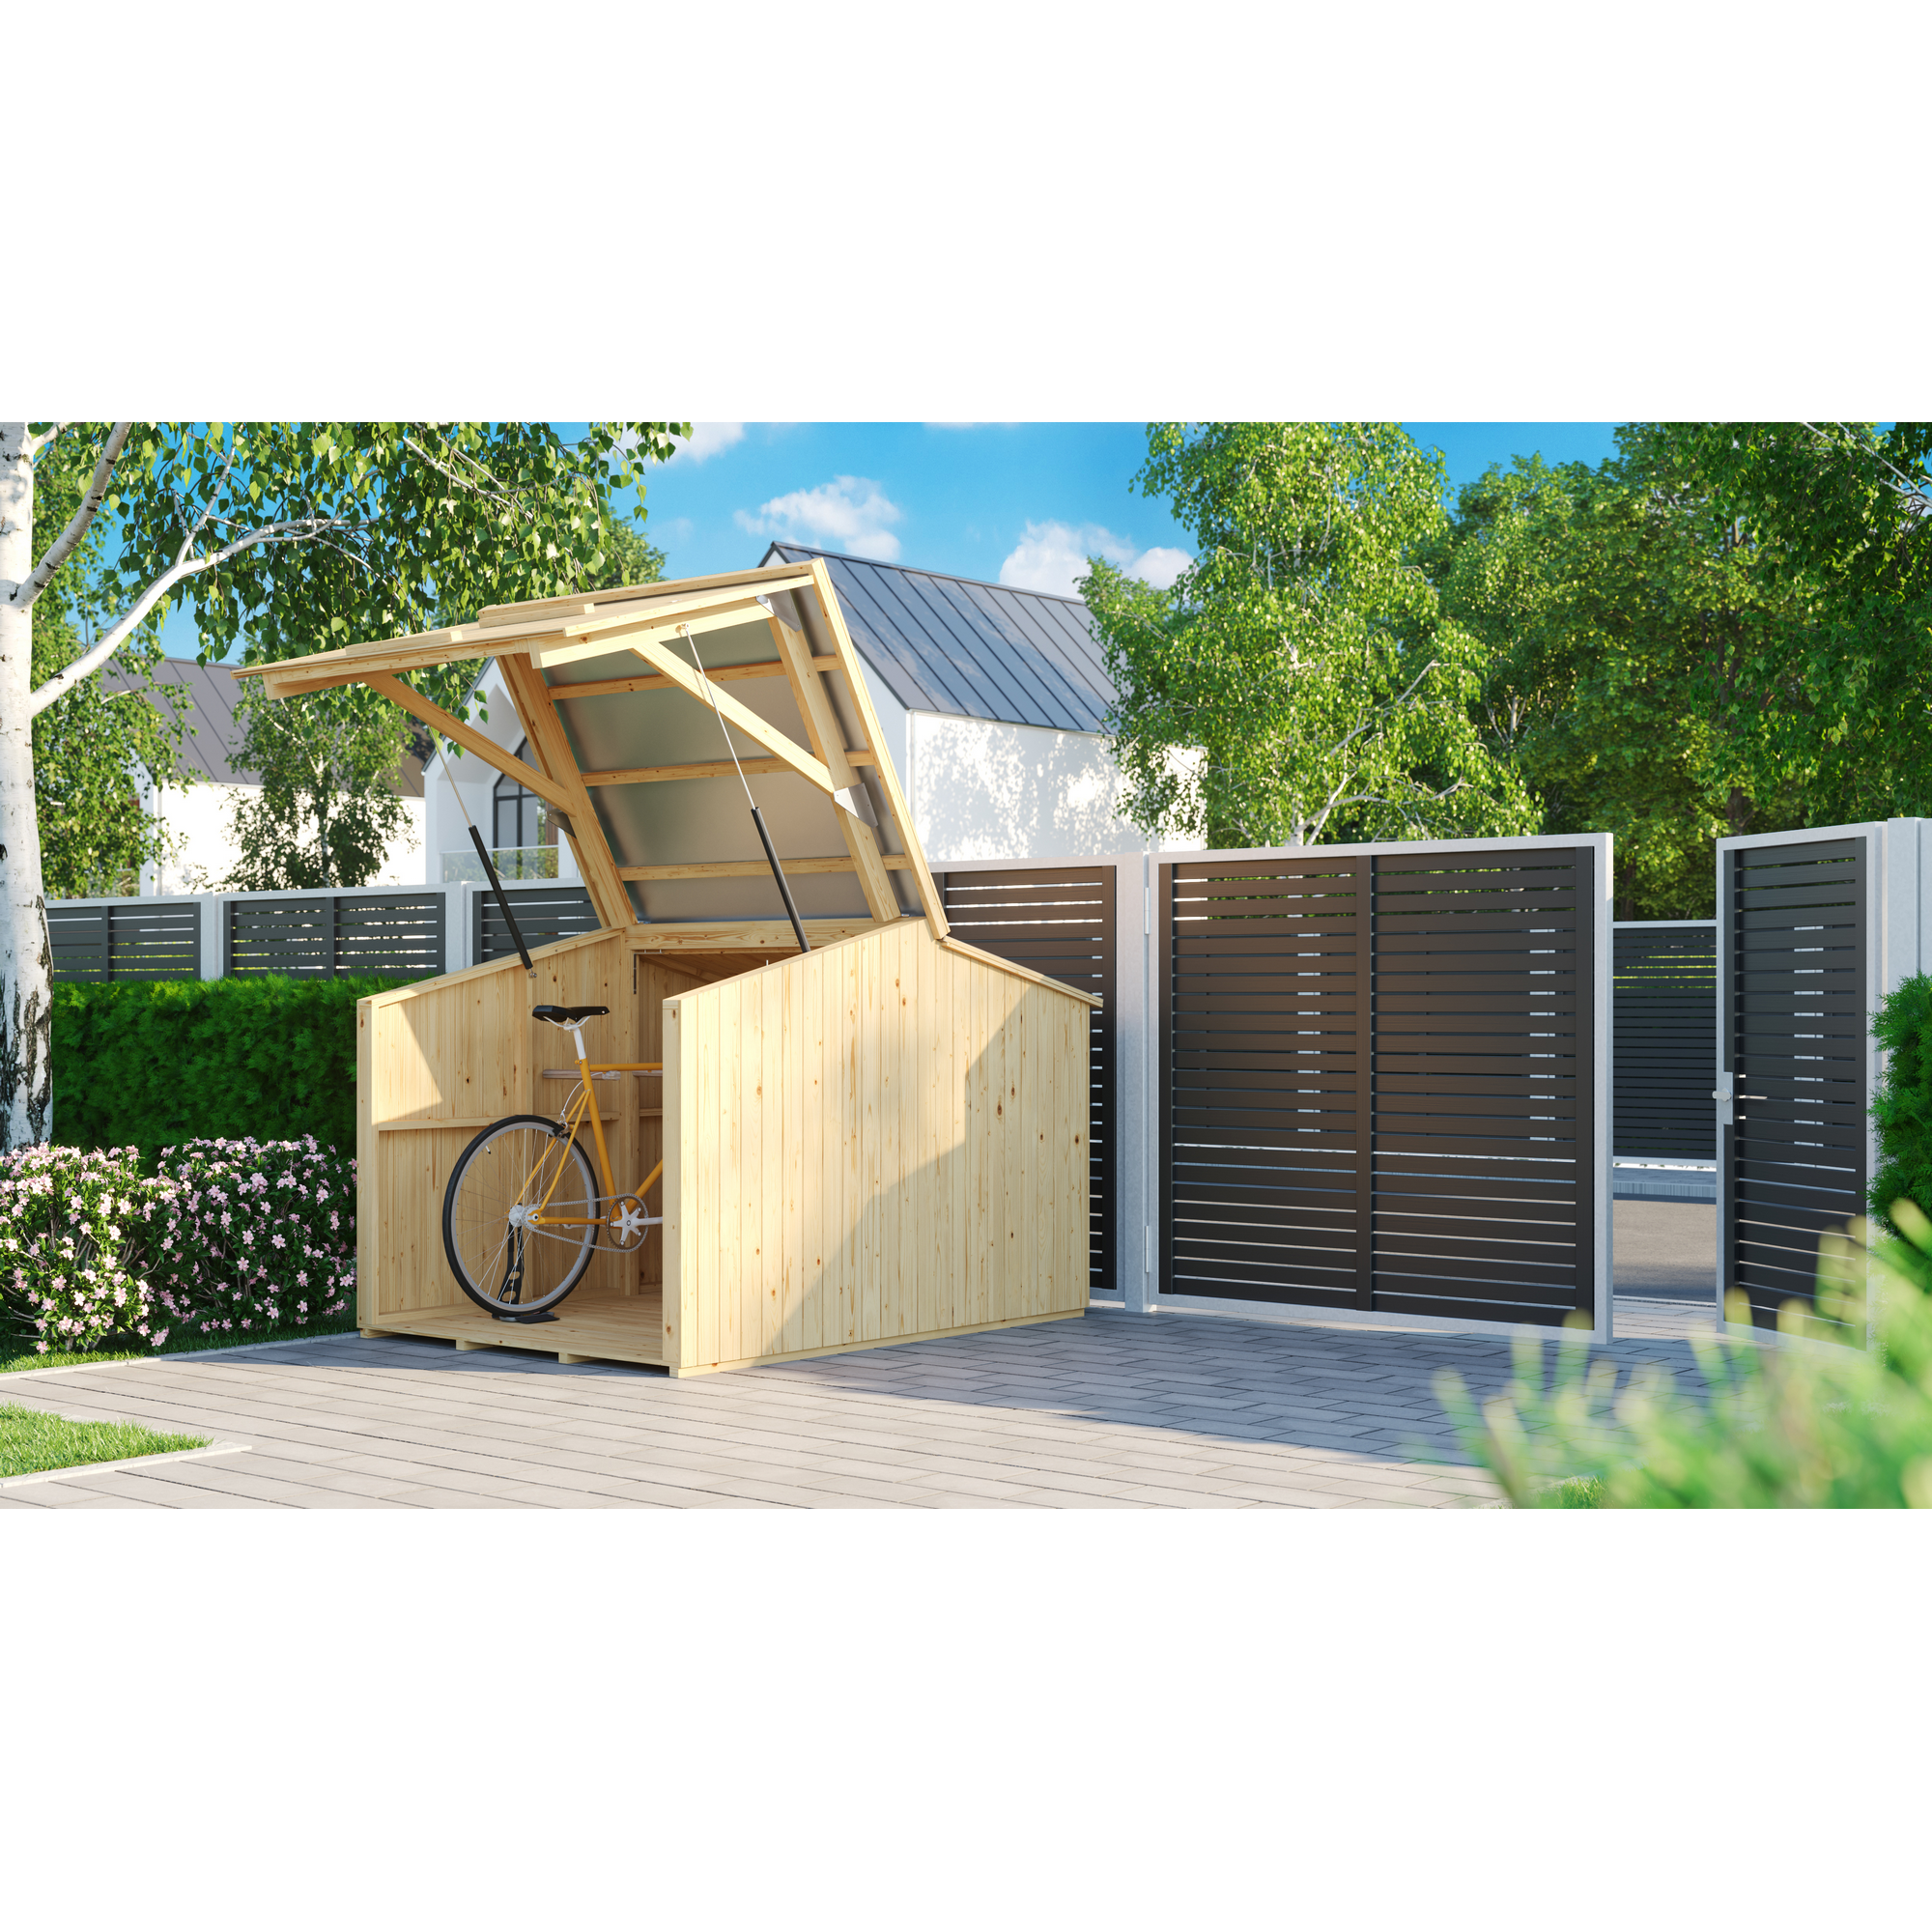 Fahrradbox 'Leon' Fichtenholz natur 204 x 150 x 146 cm + product picture